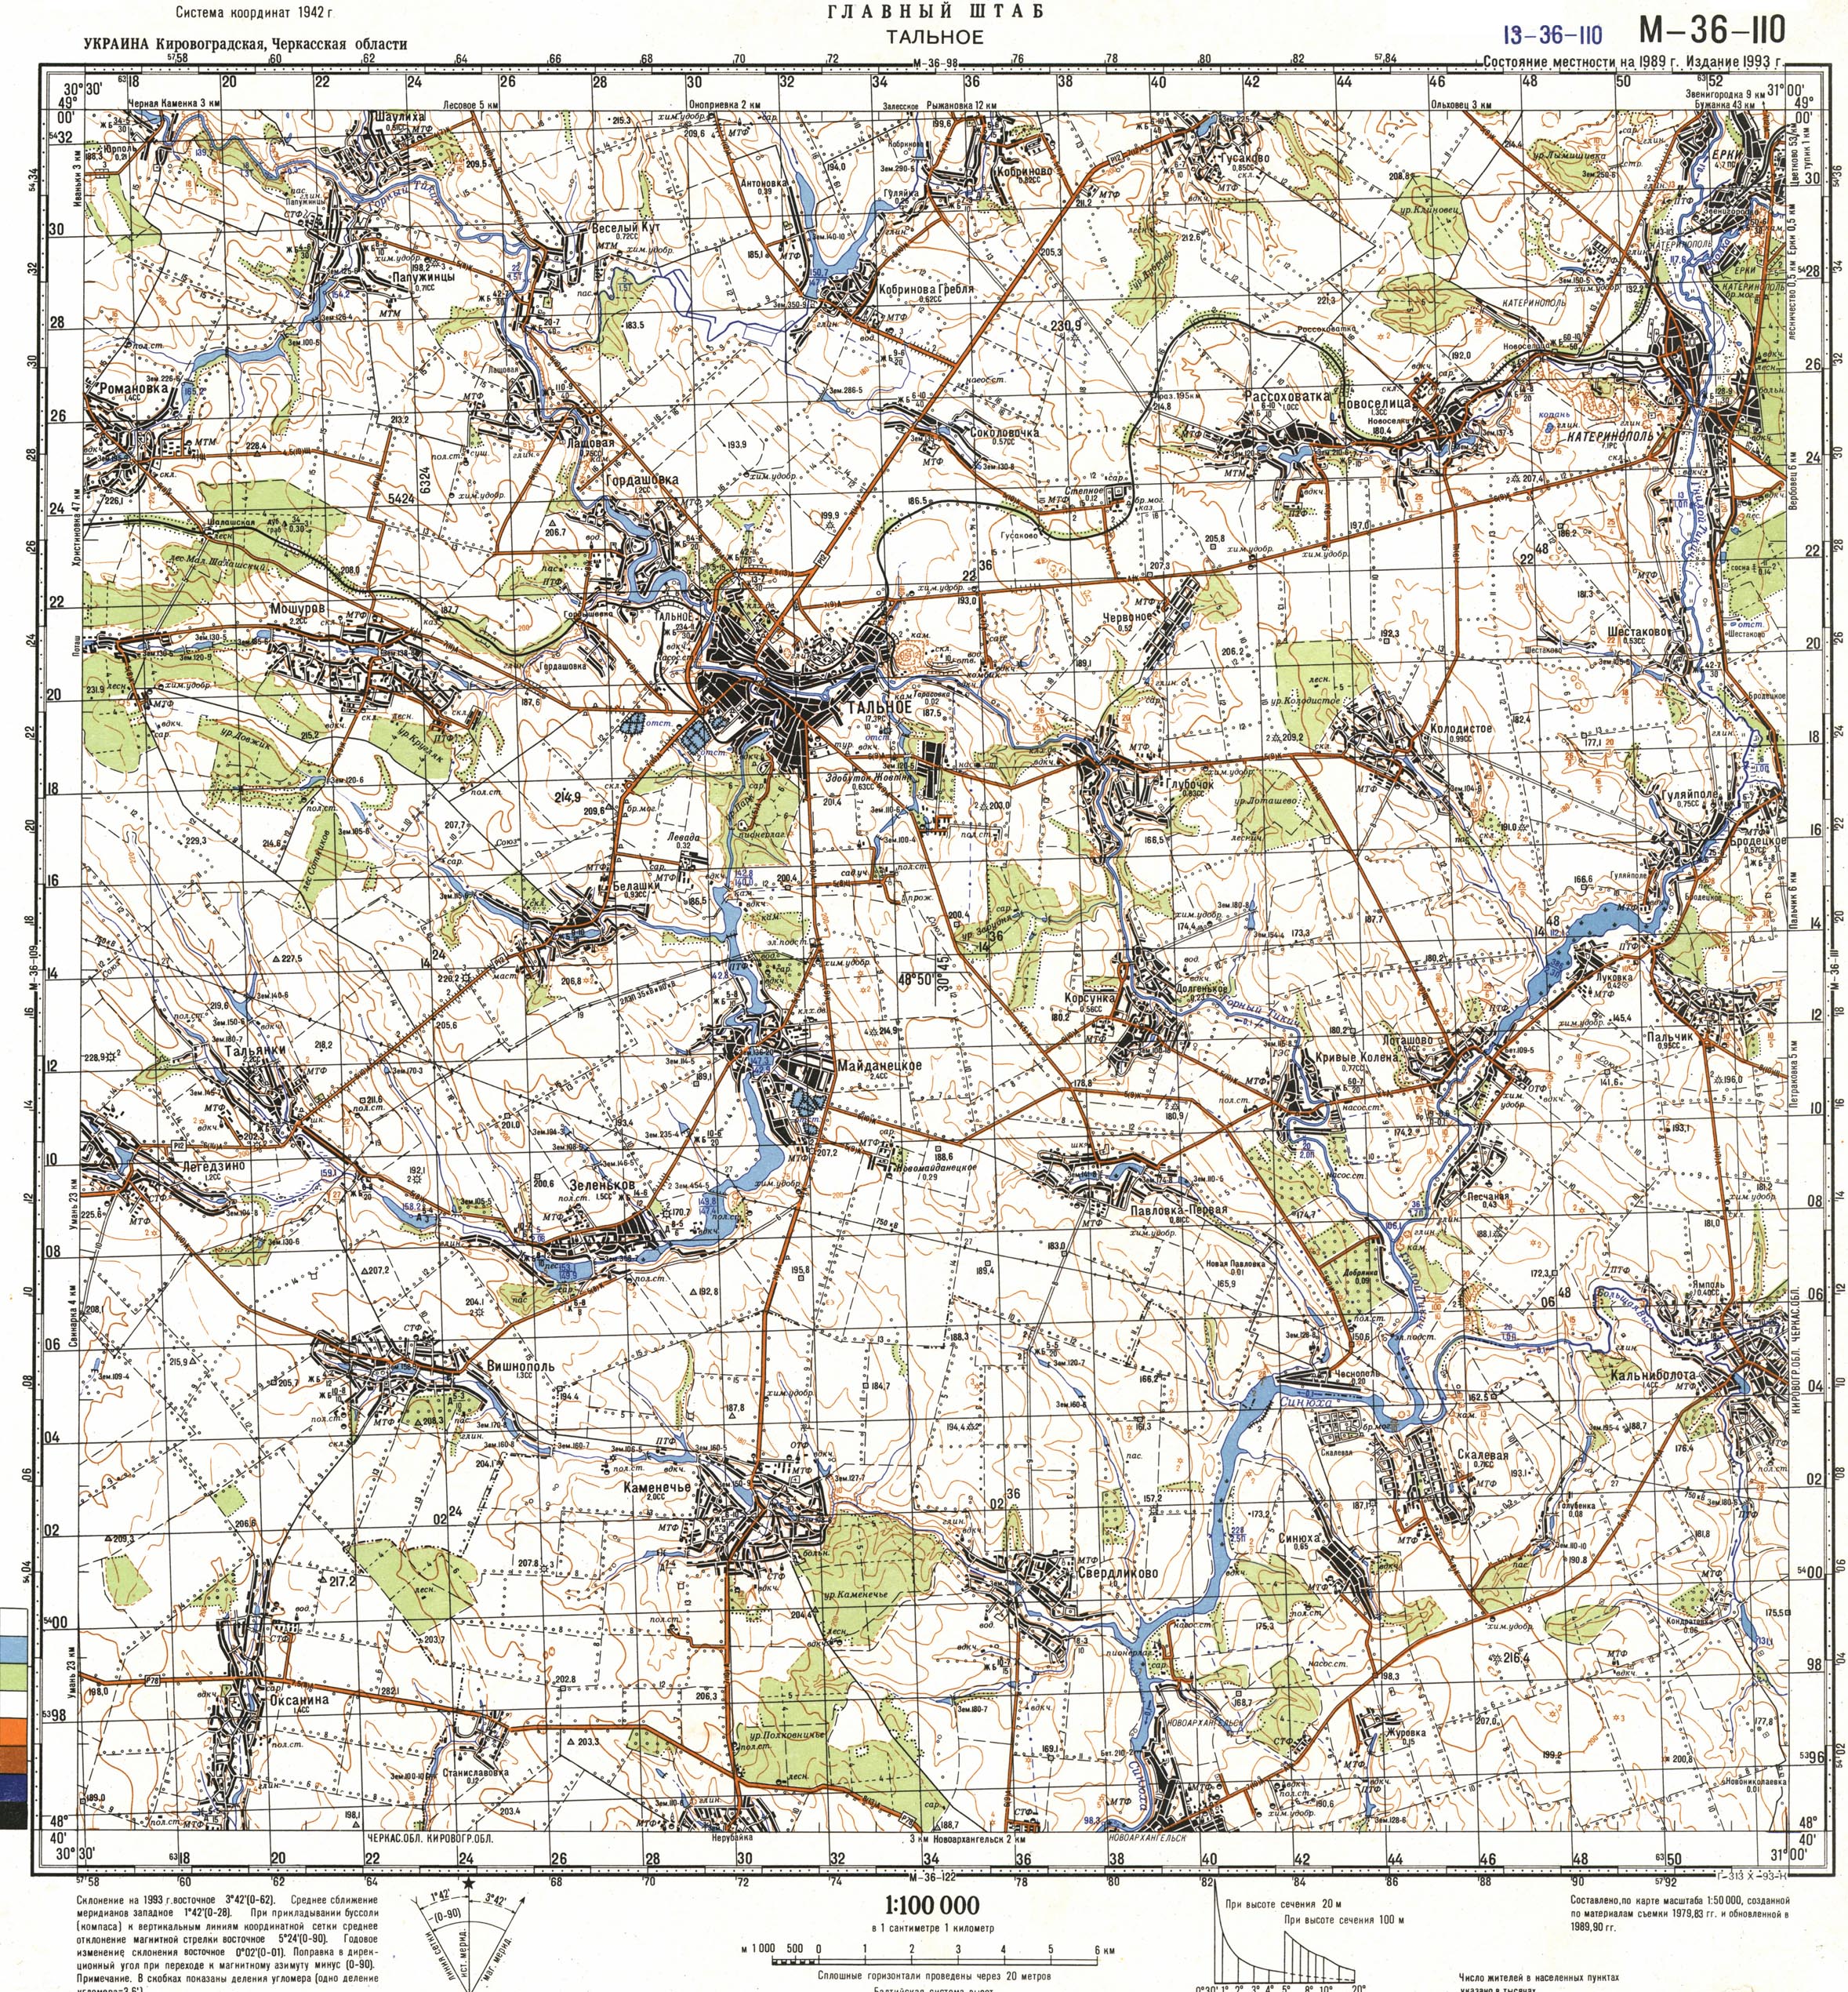 Mapy topograficzne Ukrainy 1-100 000  wersja radziecka z 1983r - M_36_110.JPG